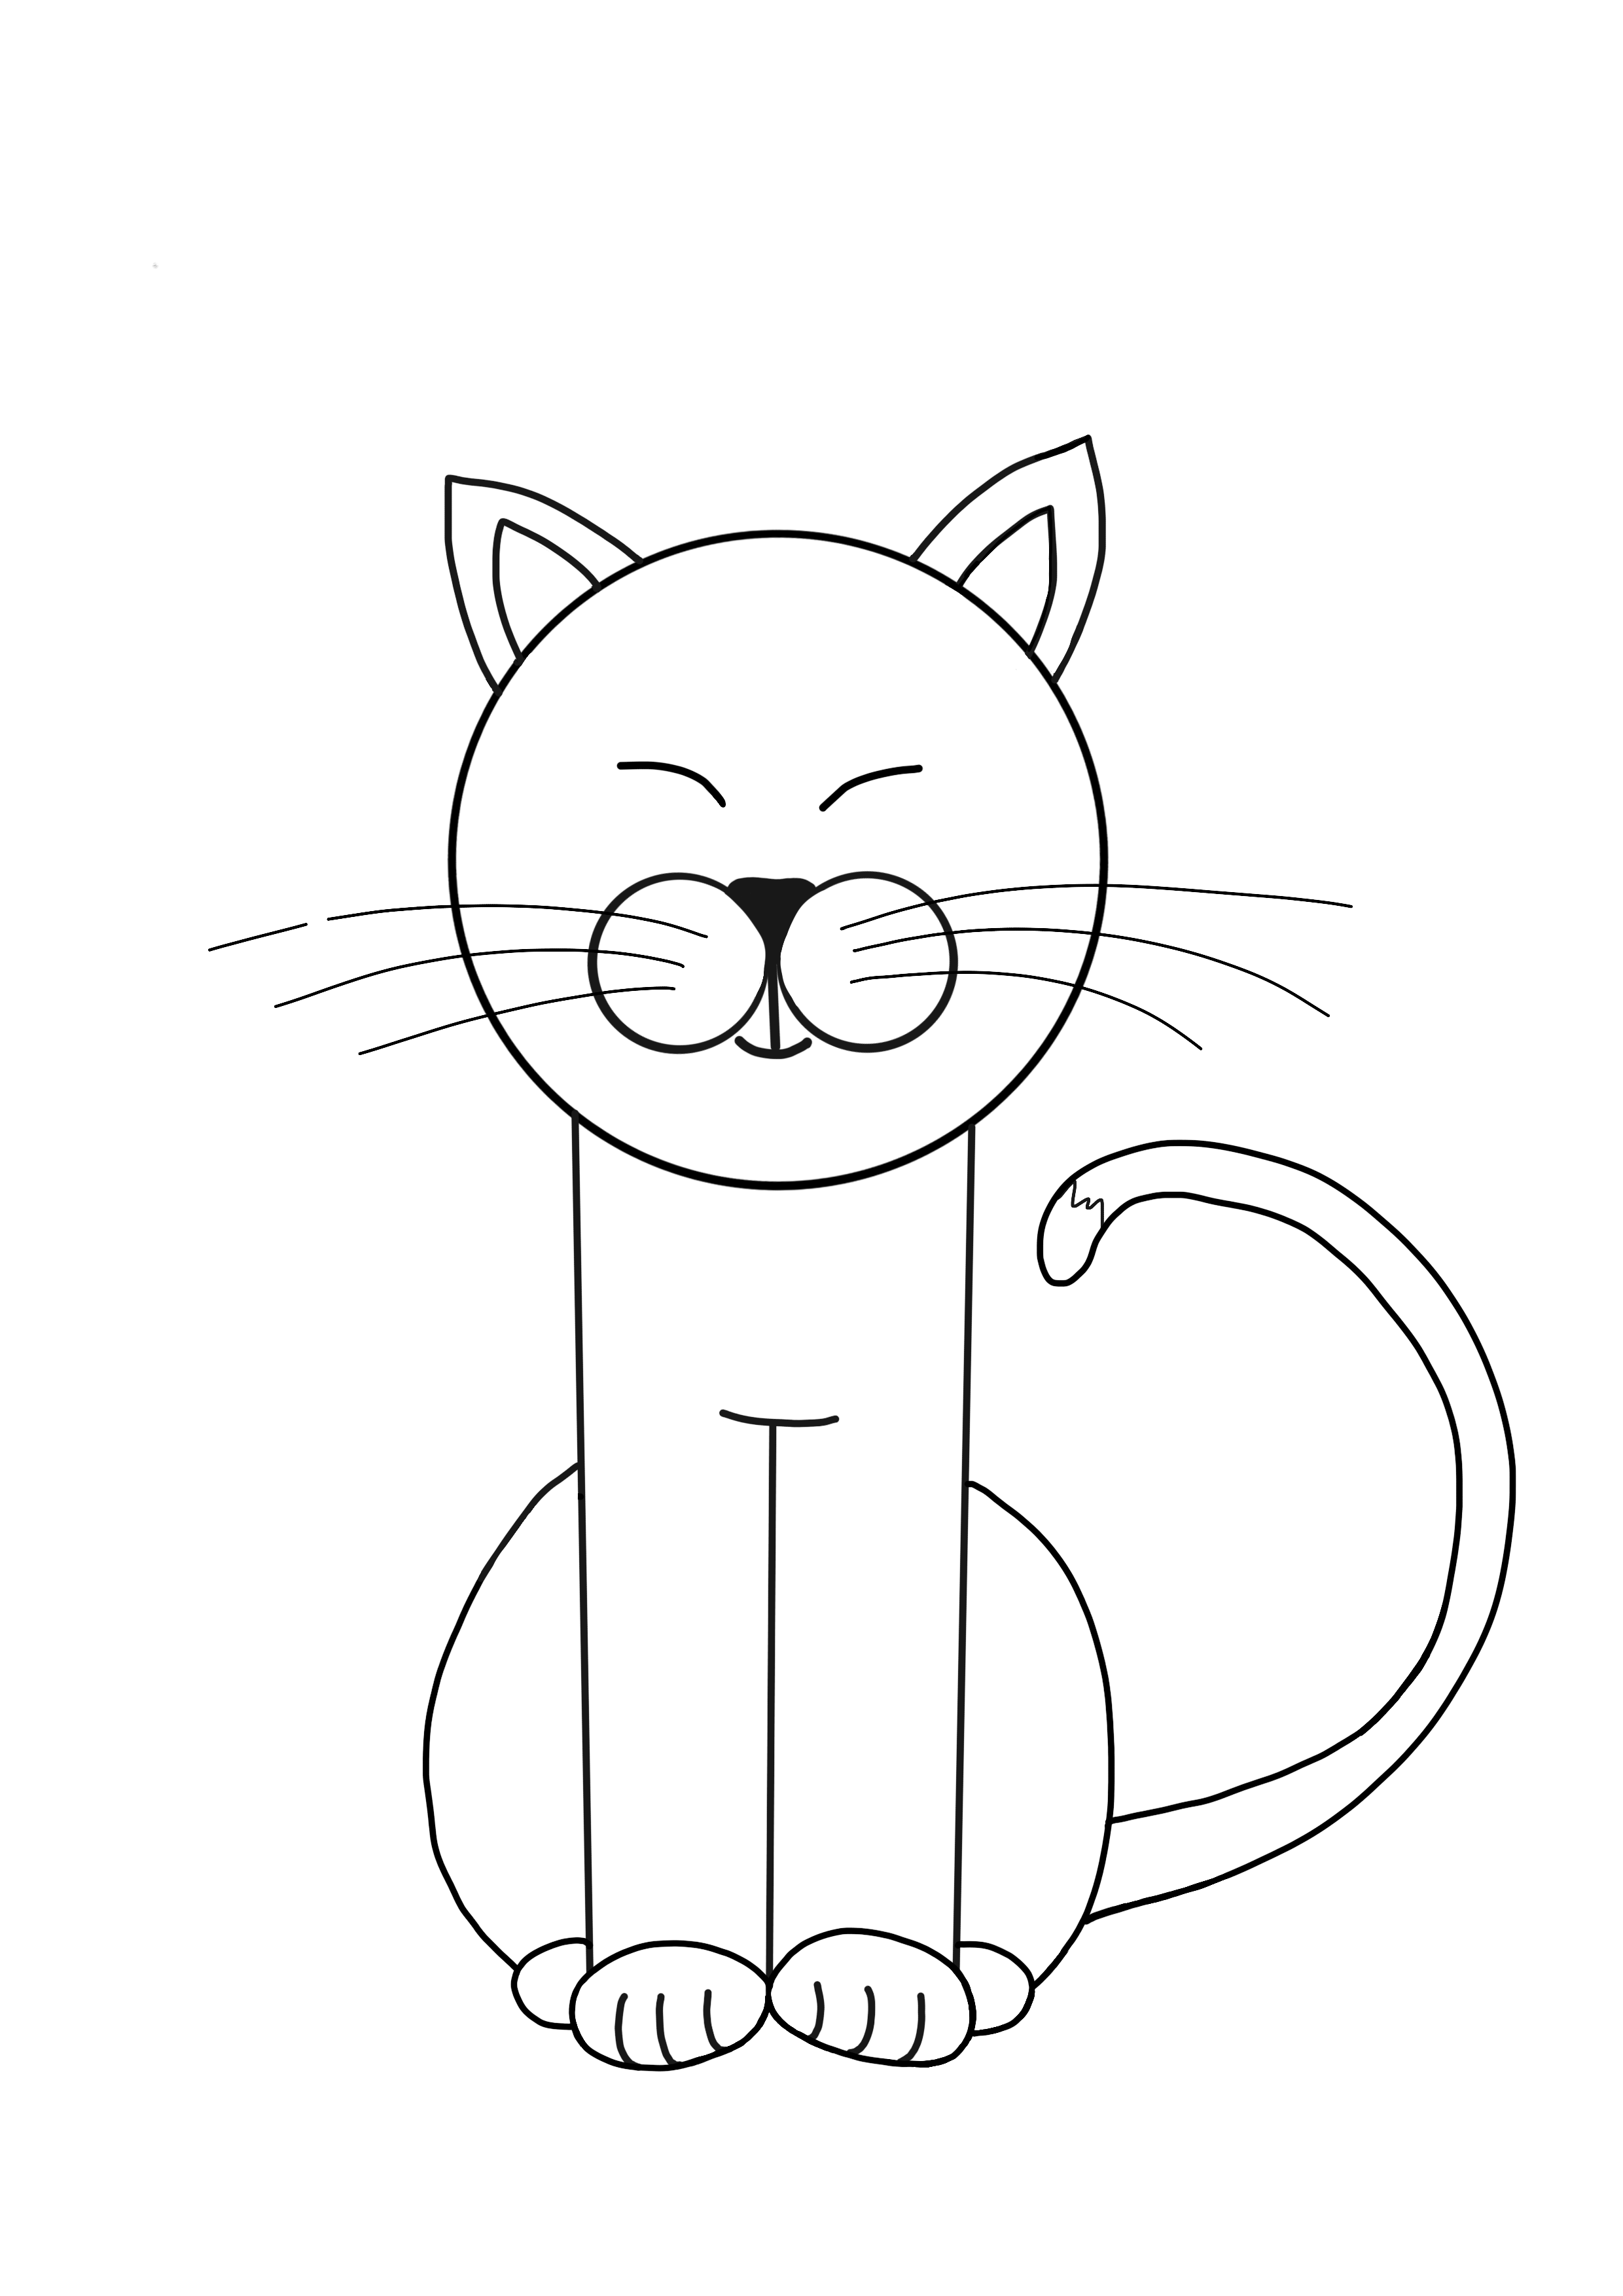 Как нарисовать кошку для детей 9 лет